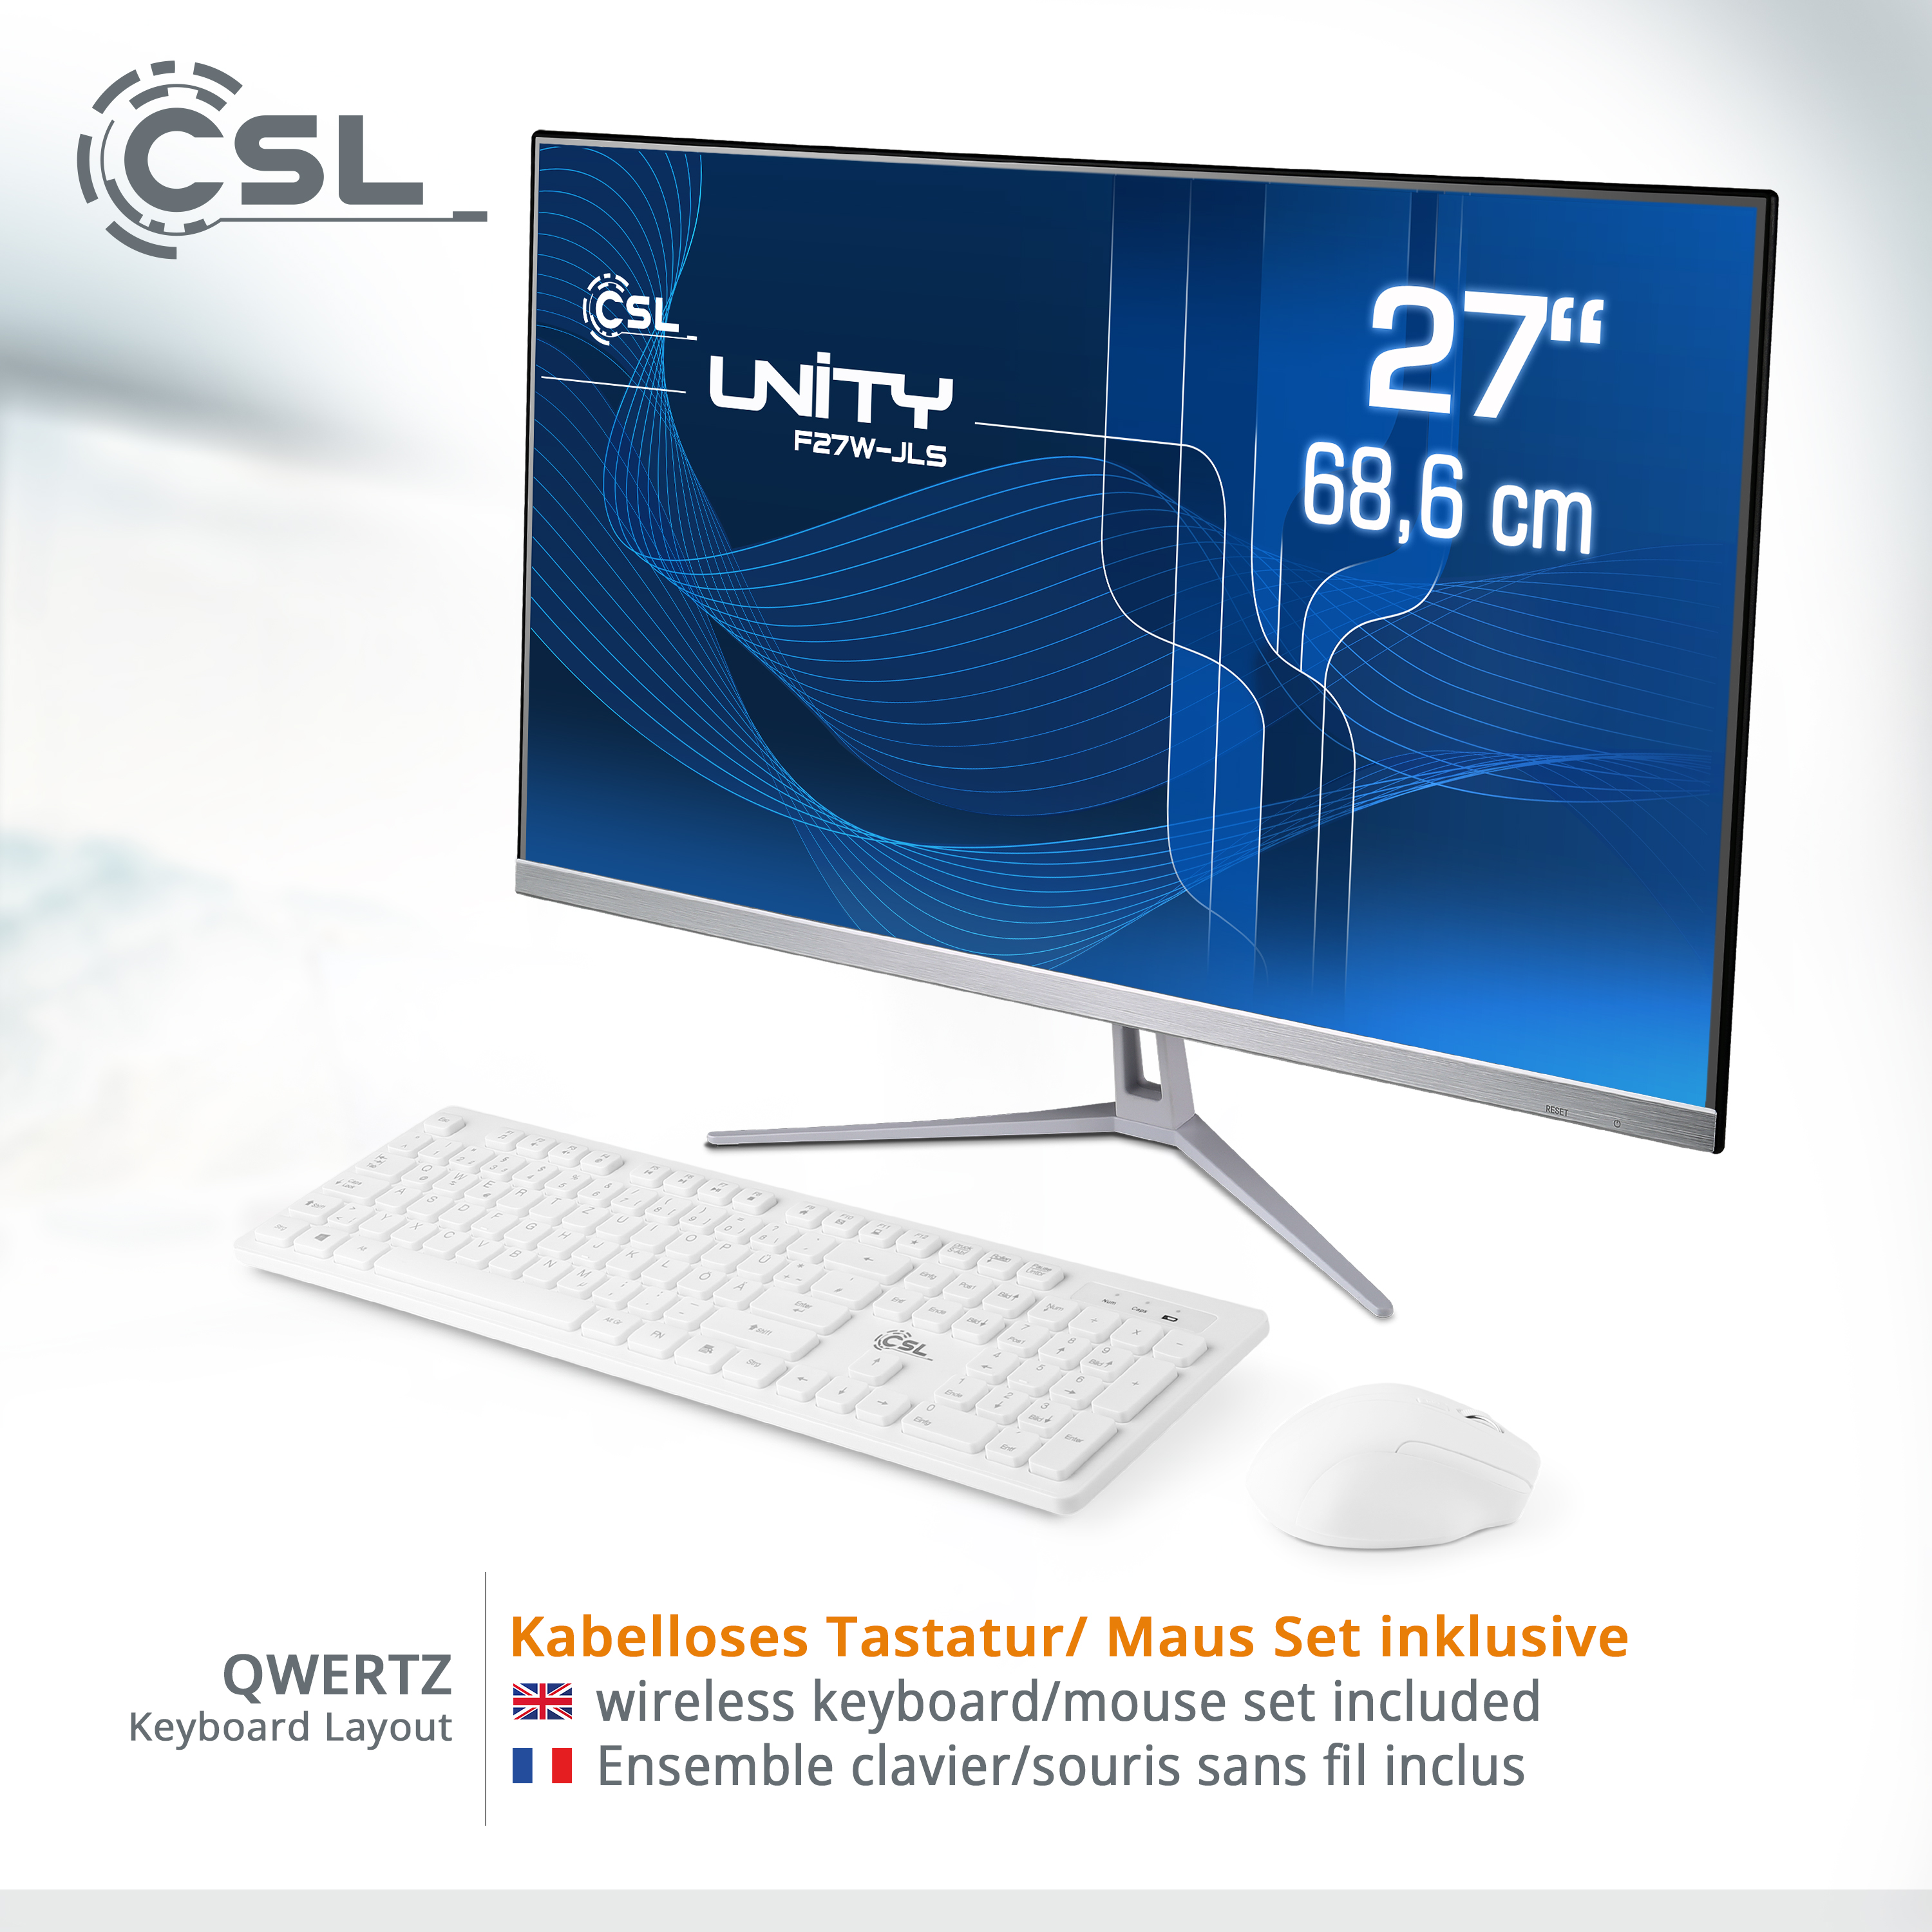 CSL Unity F27W-JLS RAM, GB 32 GB mit RAM Intel® Win Graphics, / GB Zoll / Pentium 256 Pro, 10 Display, 27 All-in-One-PC UHD / 256 weiß GB 32 SSD